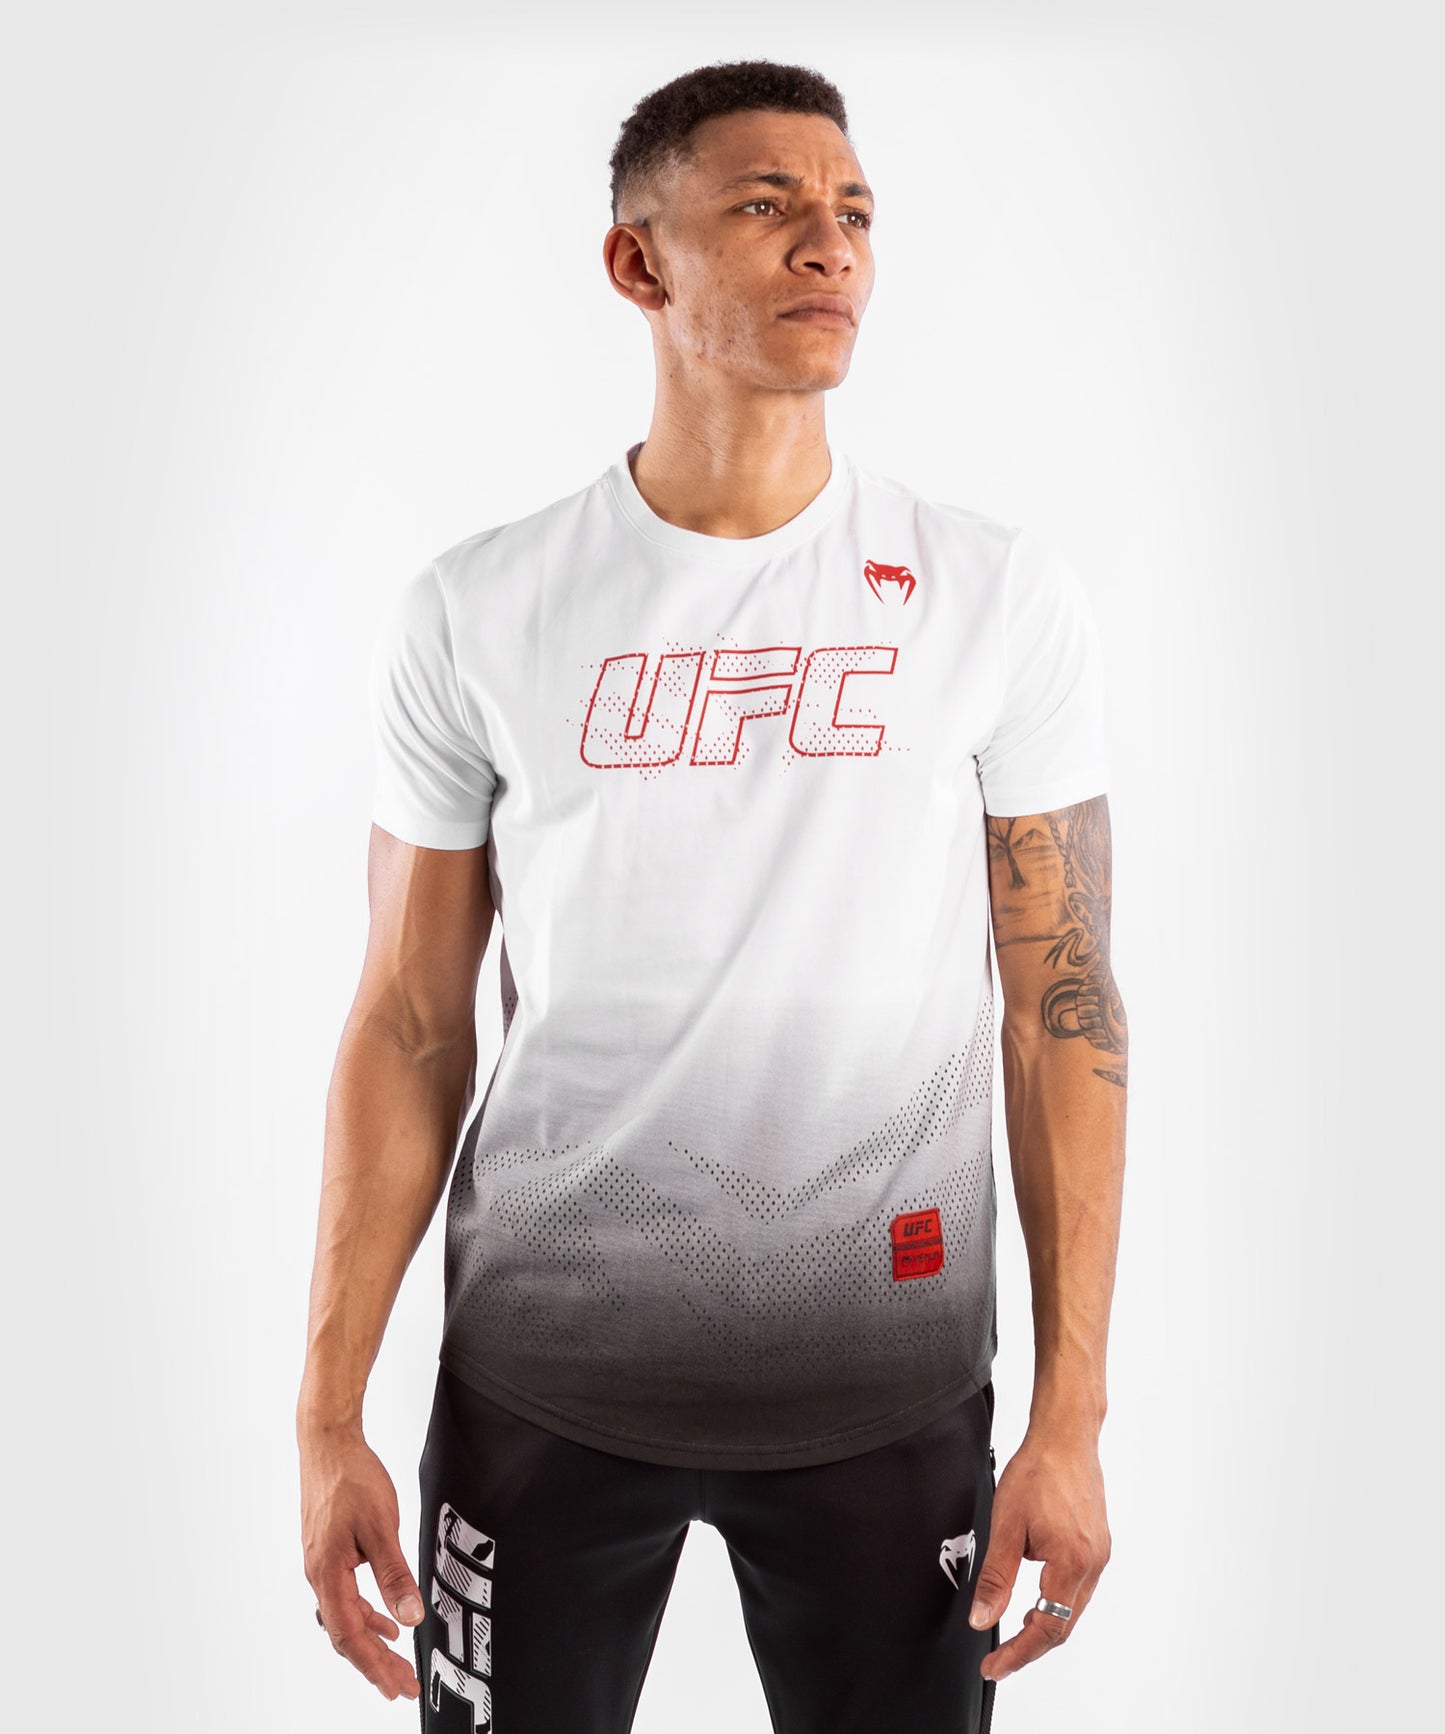 UFC Venum Performance Institute 2.0 Men’s T-Shirt - White